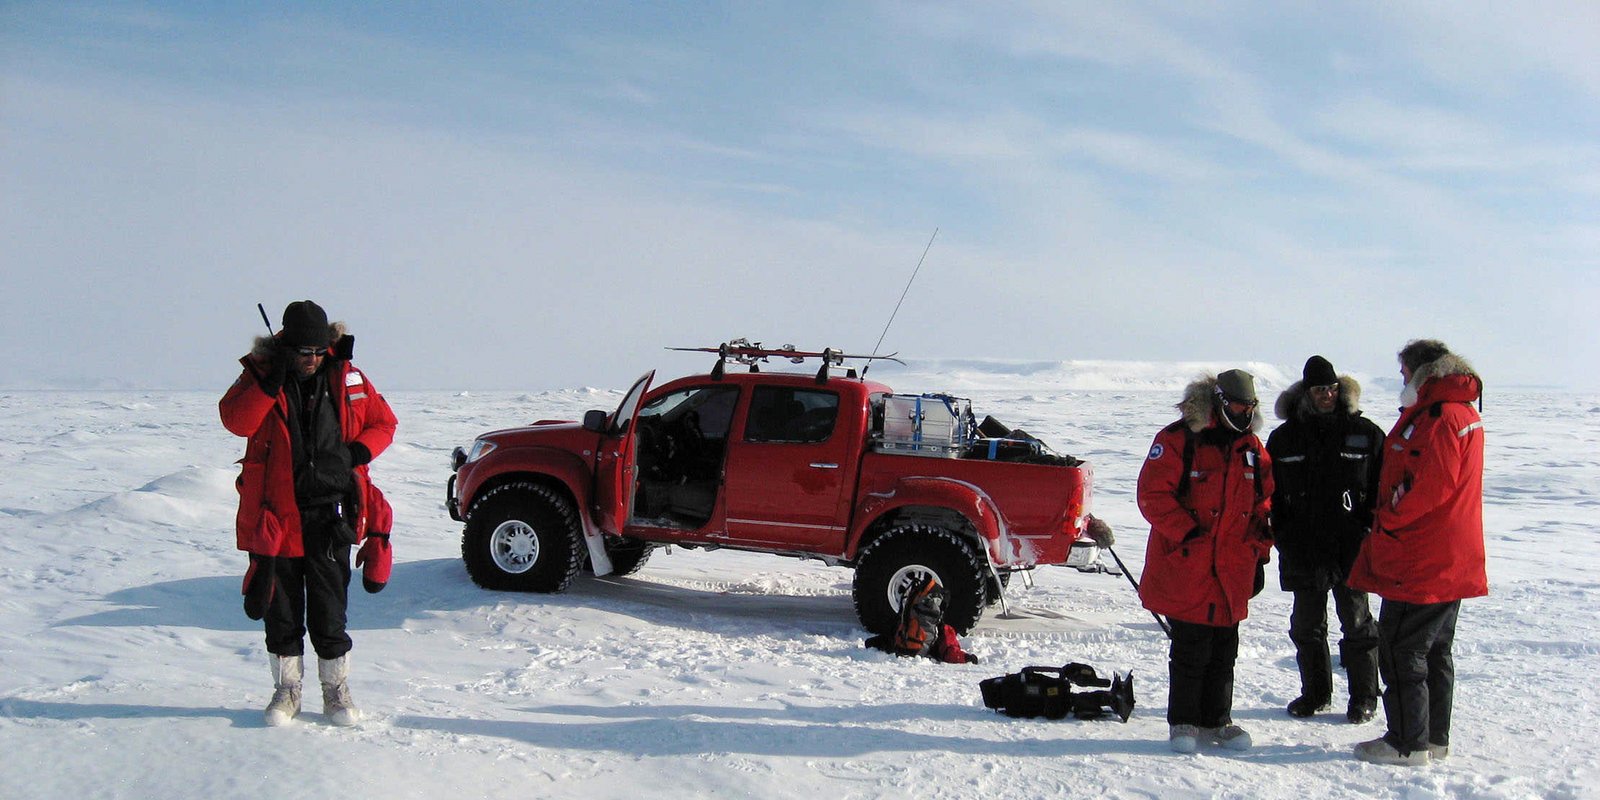 Top Gear - Das Polar Adventure